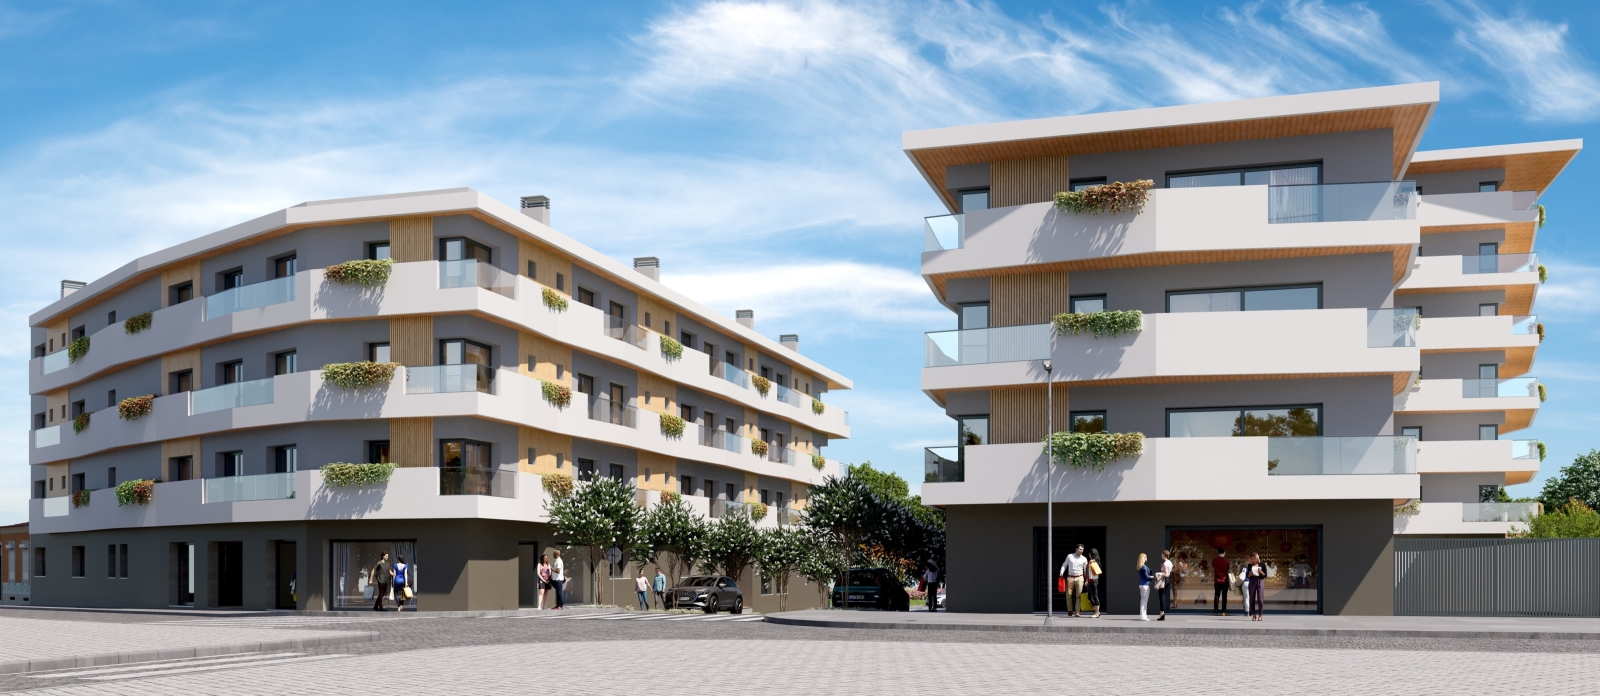 Apartamento novo com terraço, para venda, em Ramalde, Porto_237520